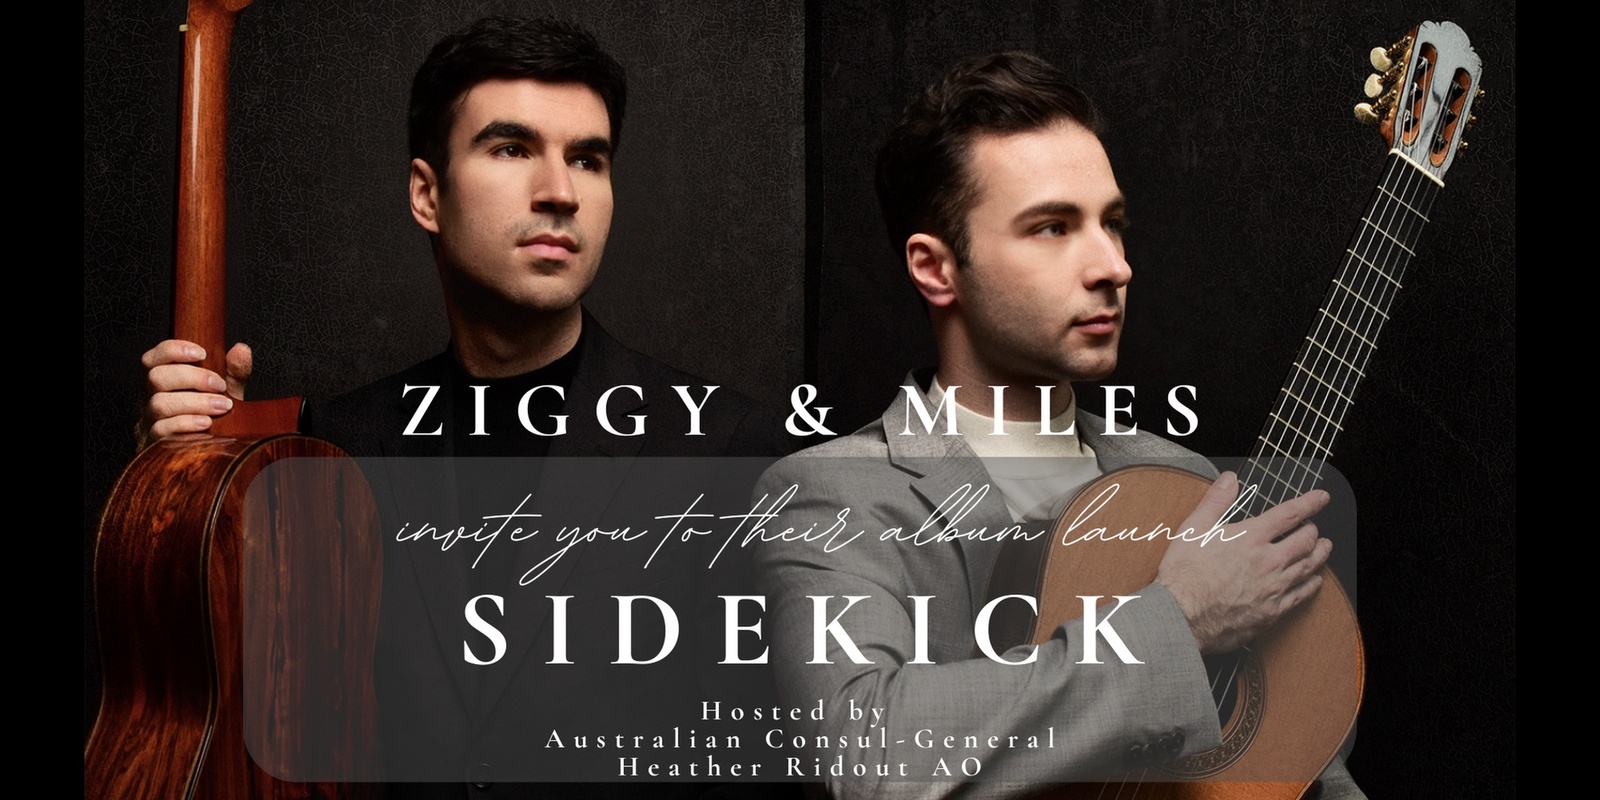 Banner image for Ziggy & Miles 'Sidekick' album launch